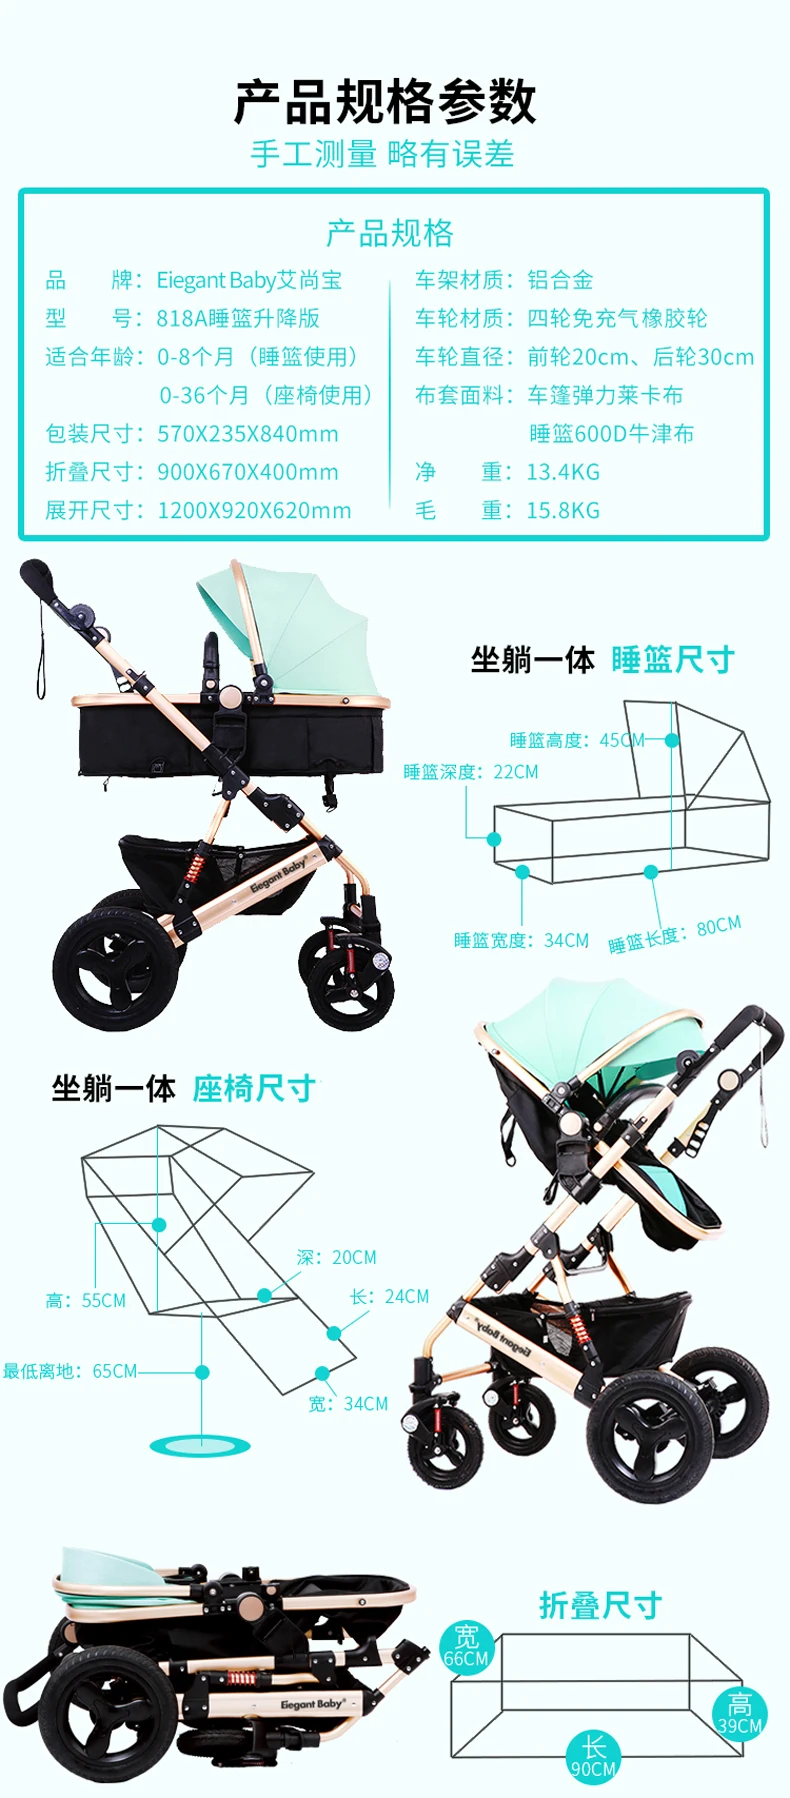 Детская коляска прогулочная, может сидеть, наклоняясь, двухсторонняя Складная четырехколесная ударная детская коляска для новорожденных